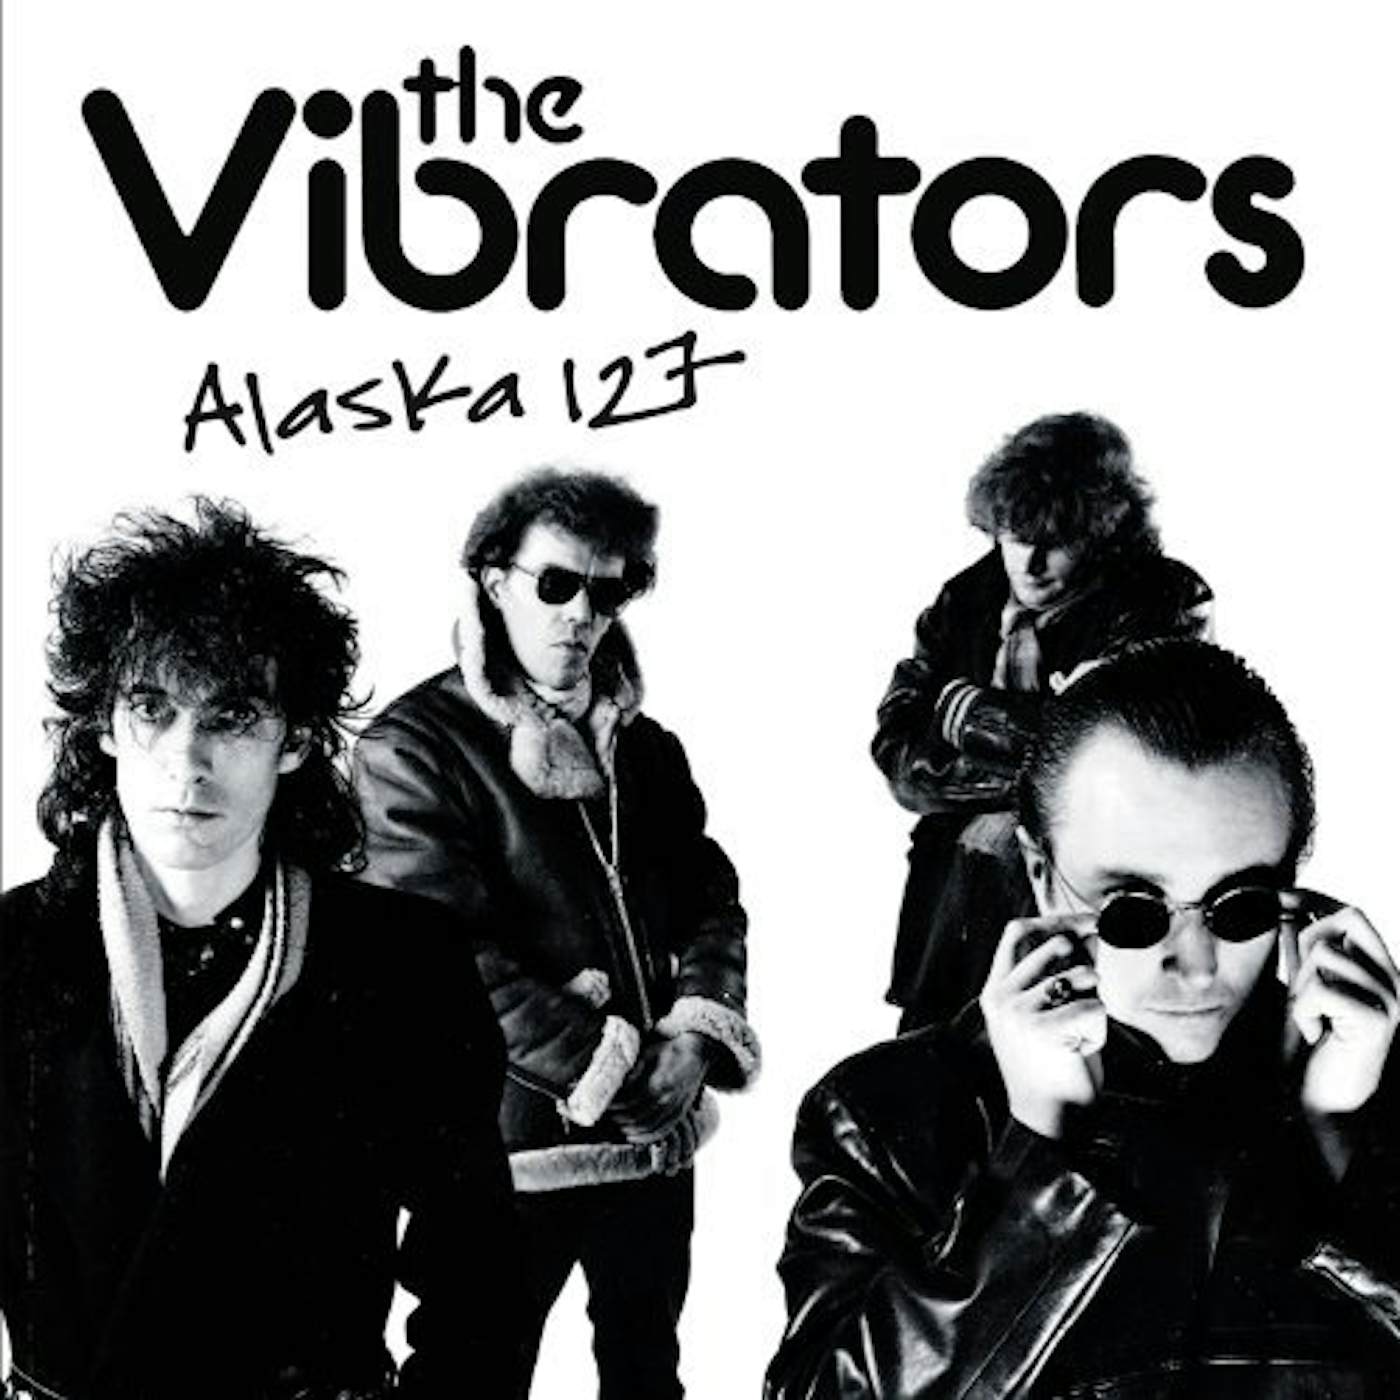 The Vibrators Alaska 127 Vinyl Record